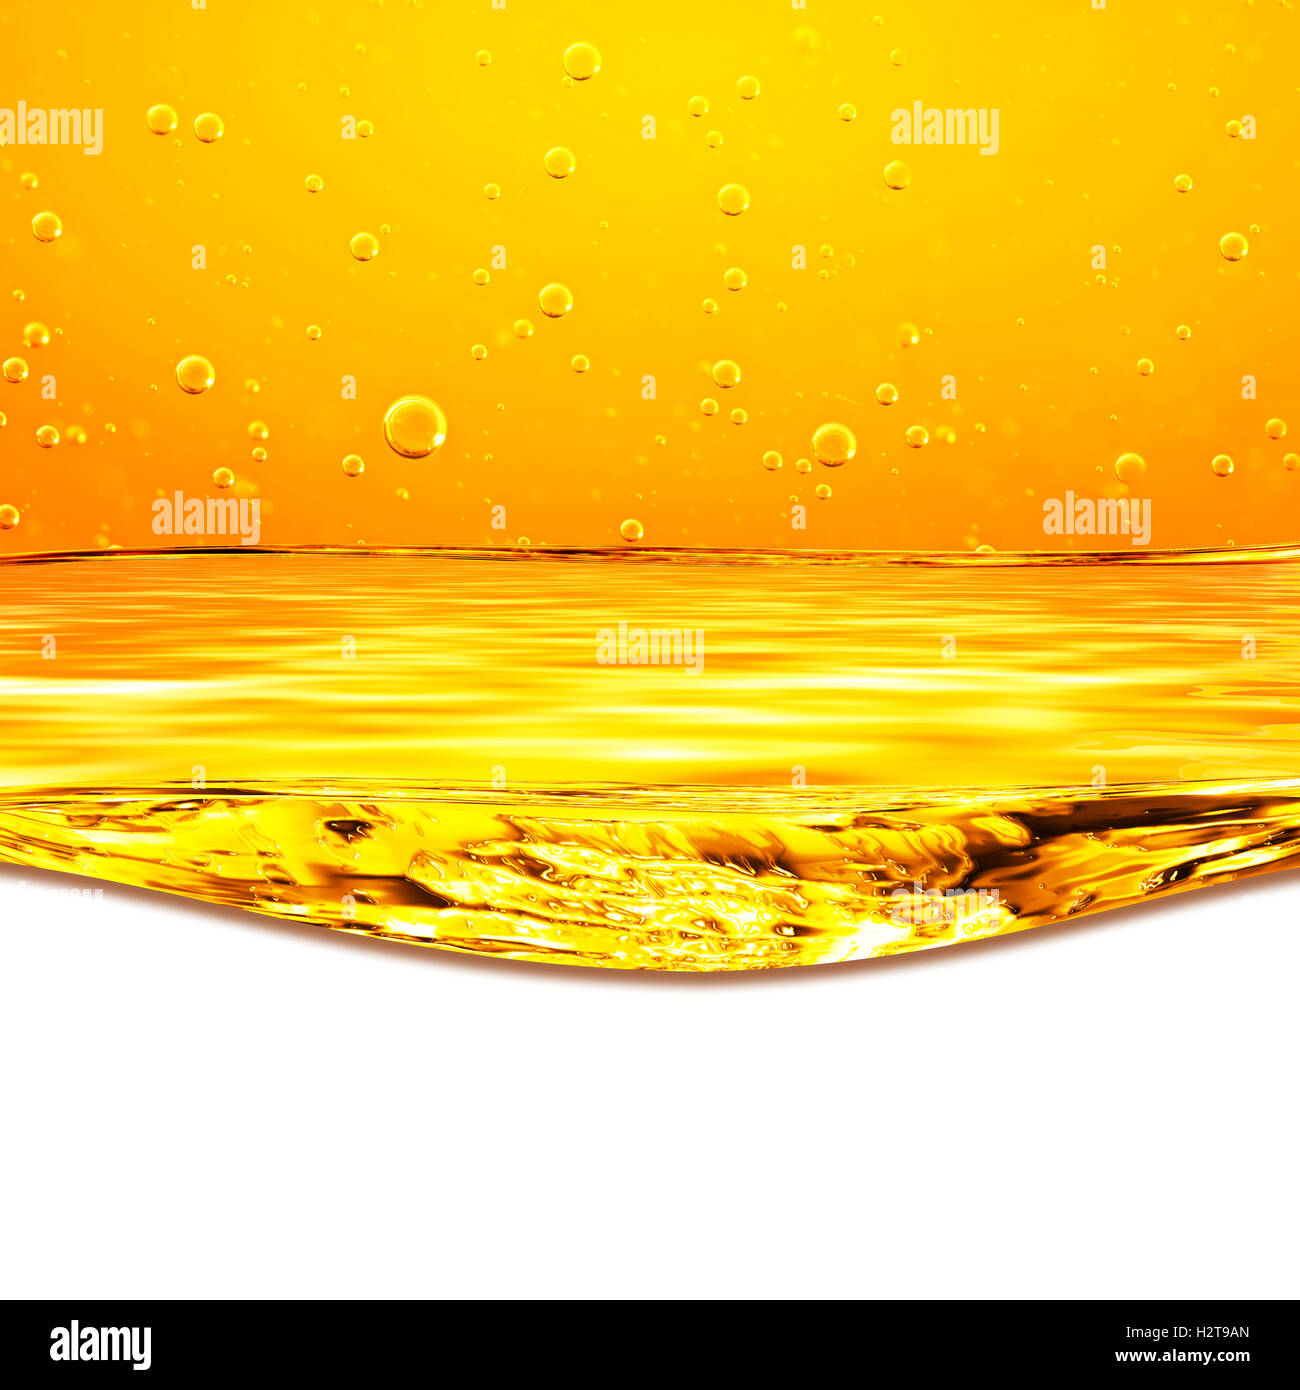 L'huile. Le miel. La bière. Des jus de fruits. Flux jaune orange liquide avec bulles d'oxygène. Libre. Orange Jaune vagues et fond blanc Banque D'Images